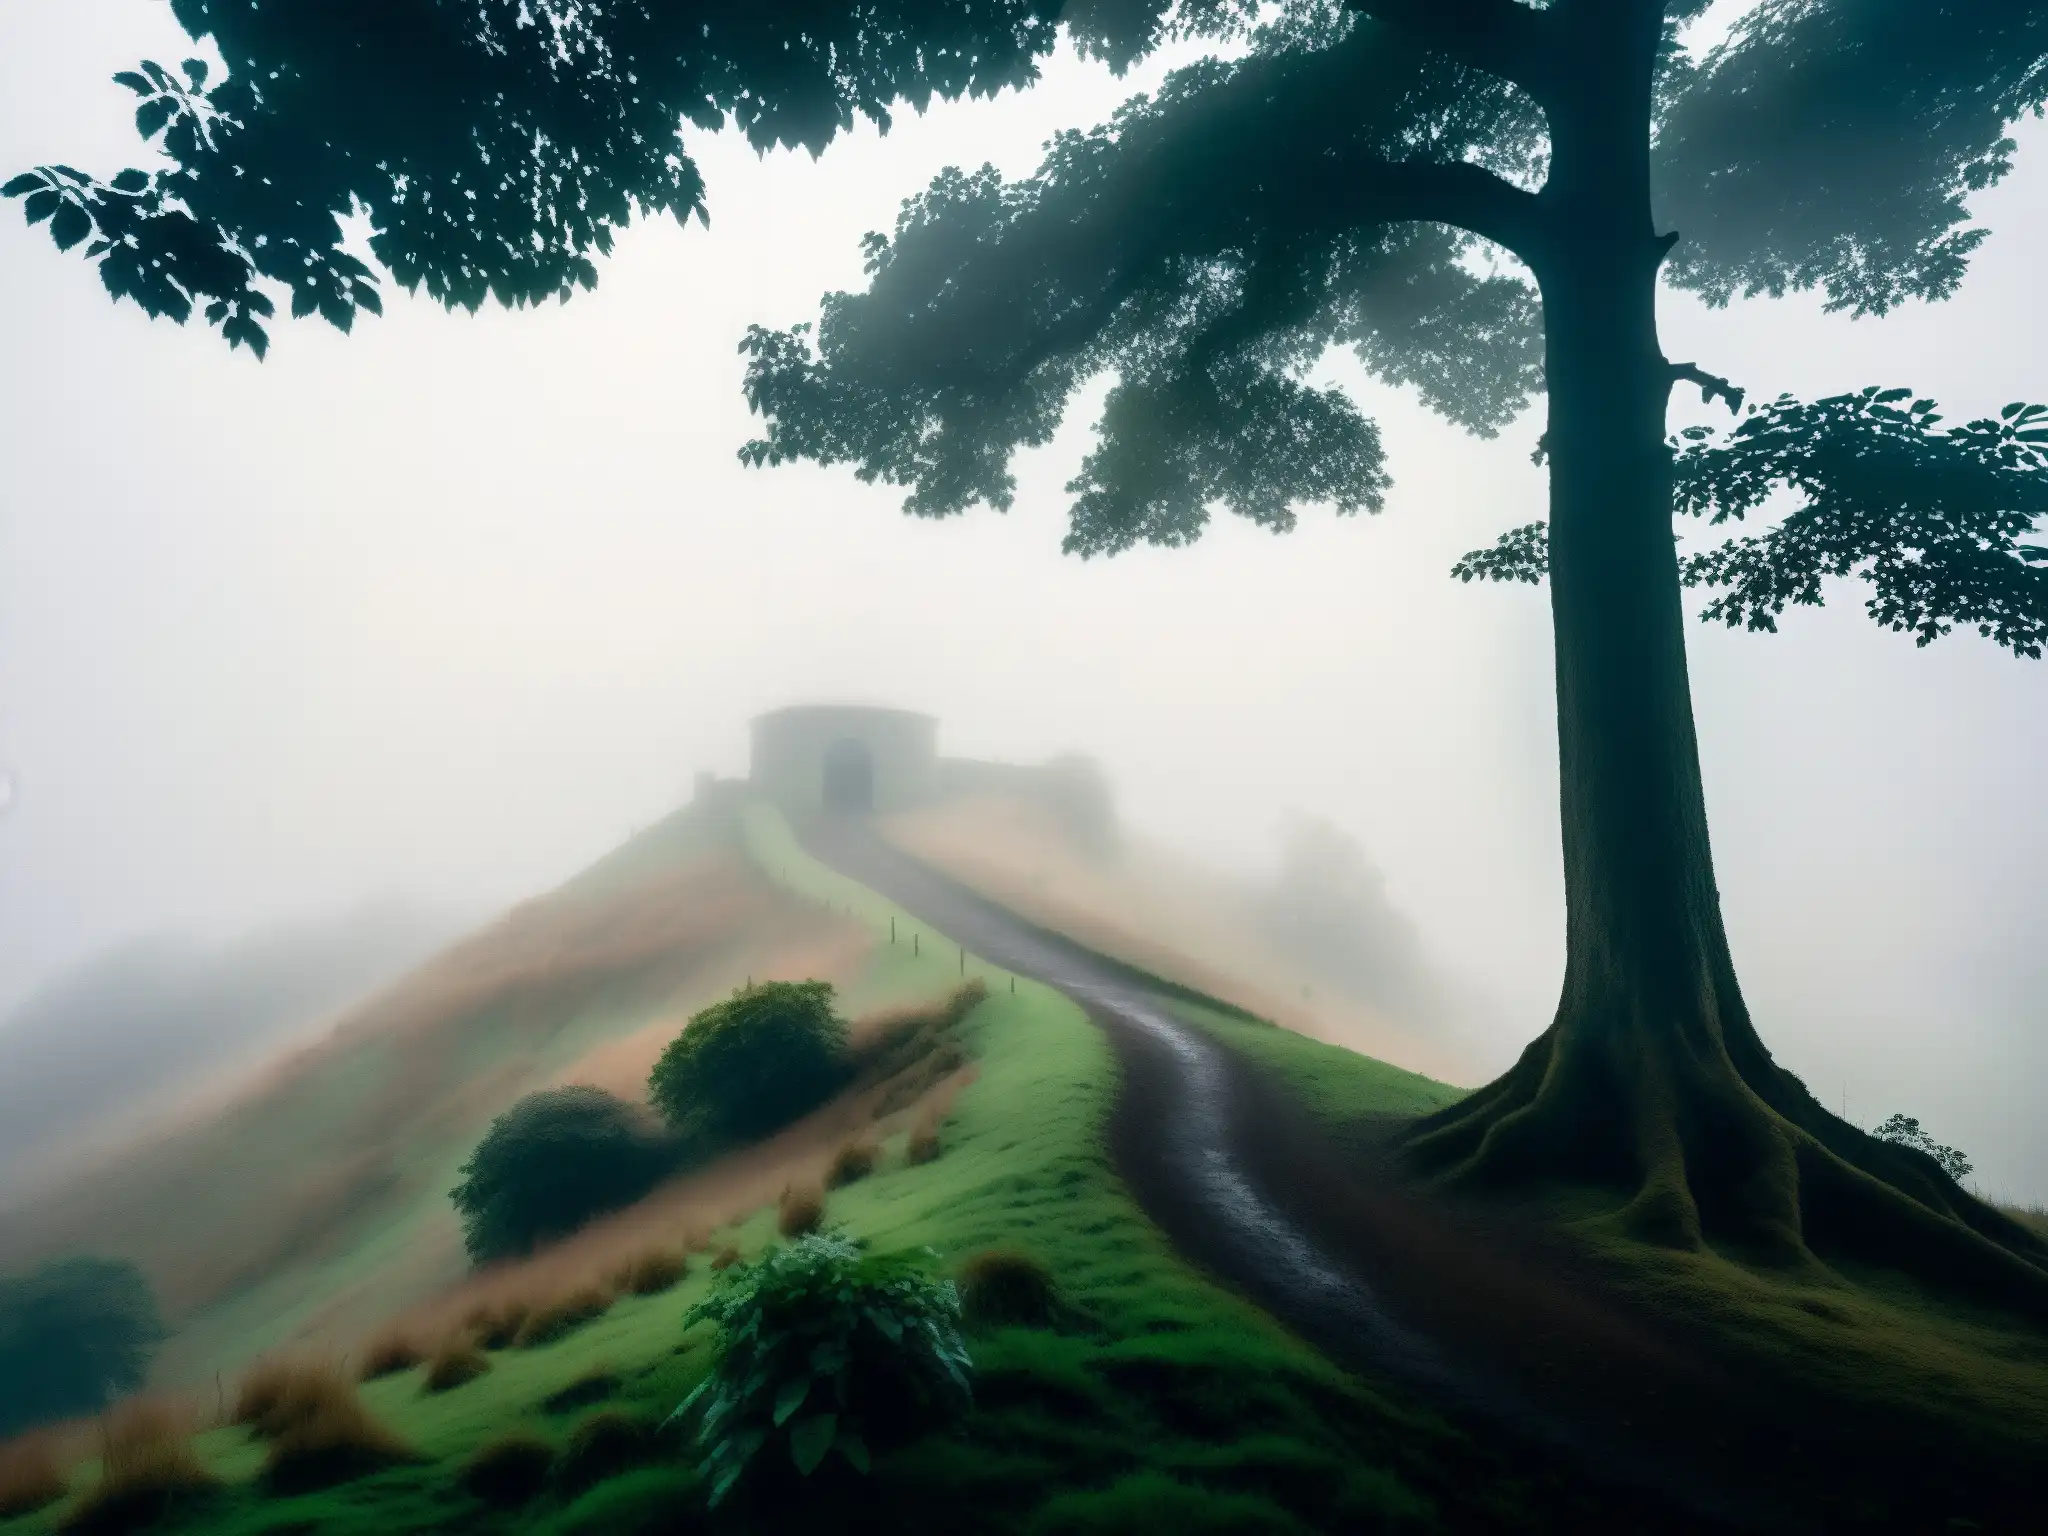 Imagen documental de alta resolución de la misteriosa colina Barog envuelta en niebla, con la tenue entrada de un túnel apenas visible